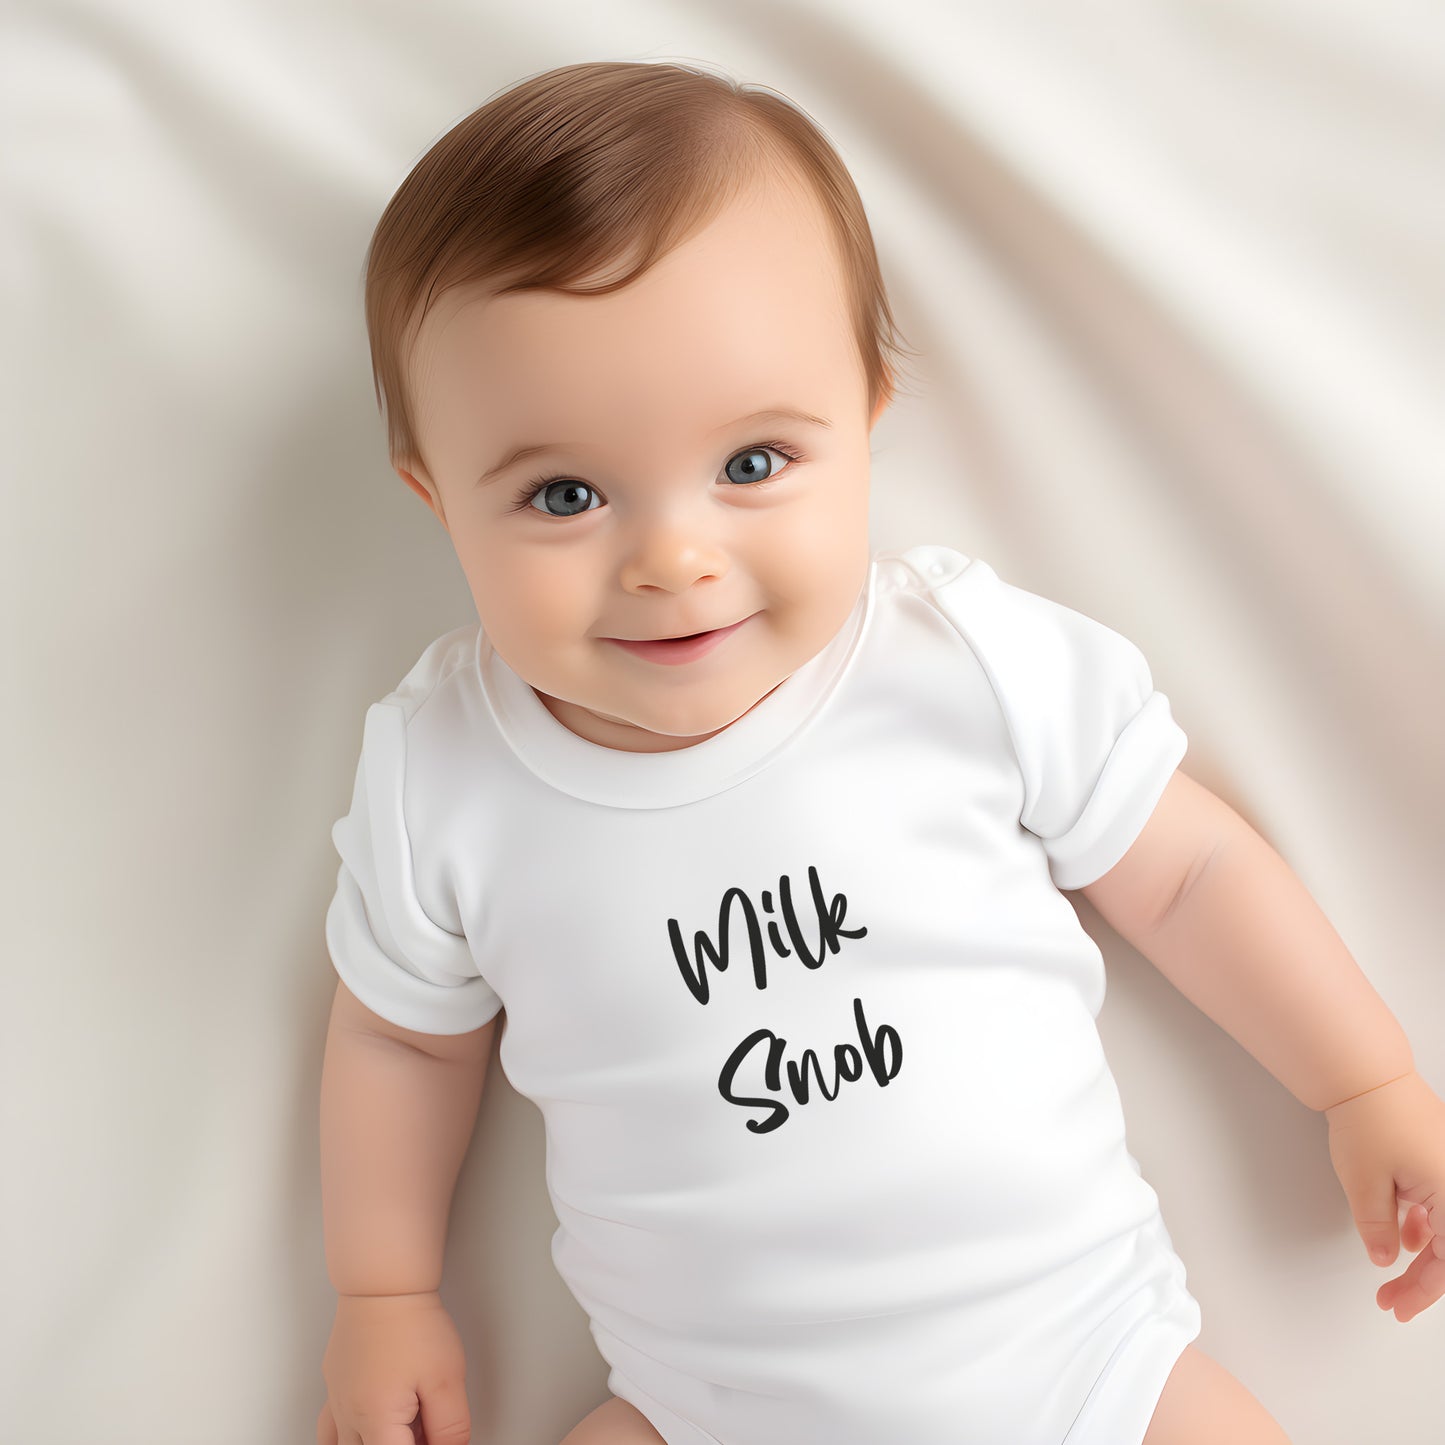 Milk Snob - Baby Vest